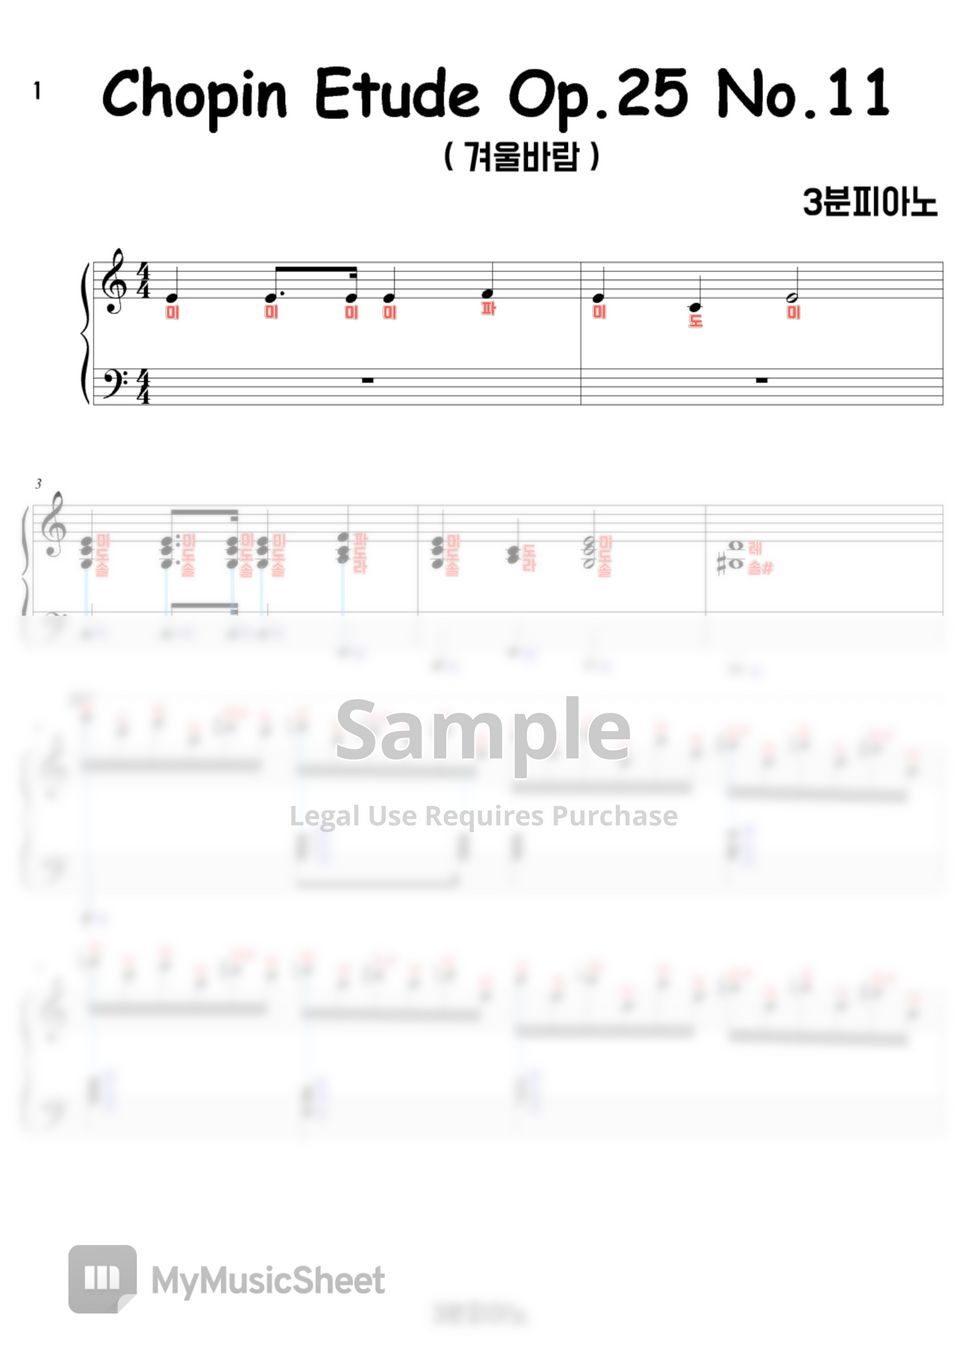 Chopin - Etude Op.25 No.11 겨울바람 (계이름악보만) by 3분피아노